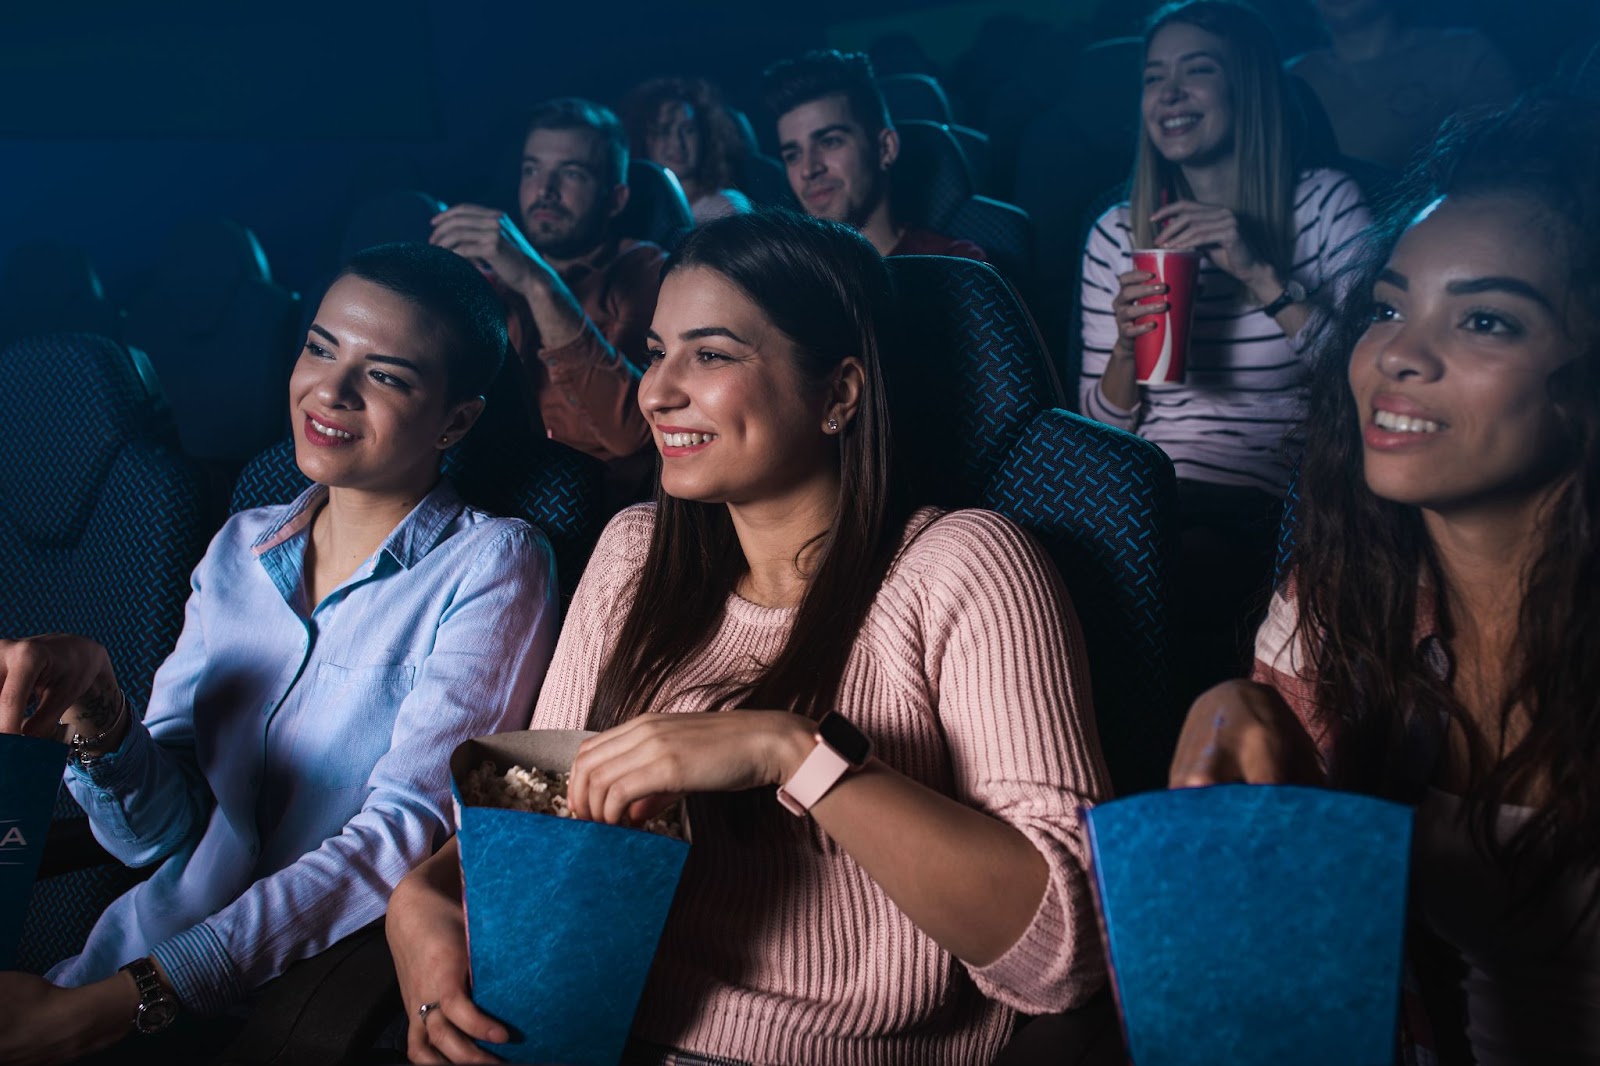 Jovens assistindo a um filme no cinema.